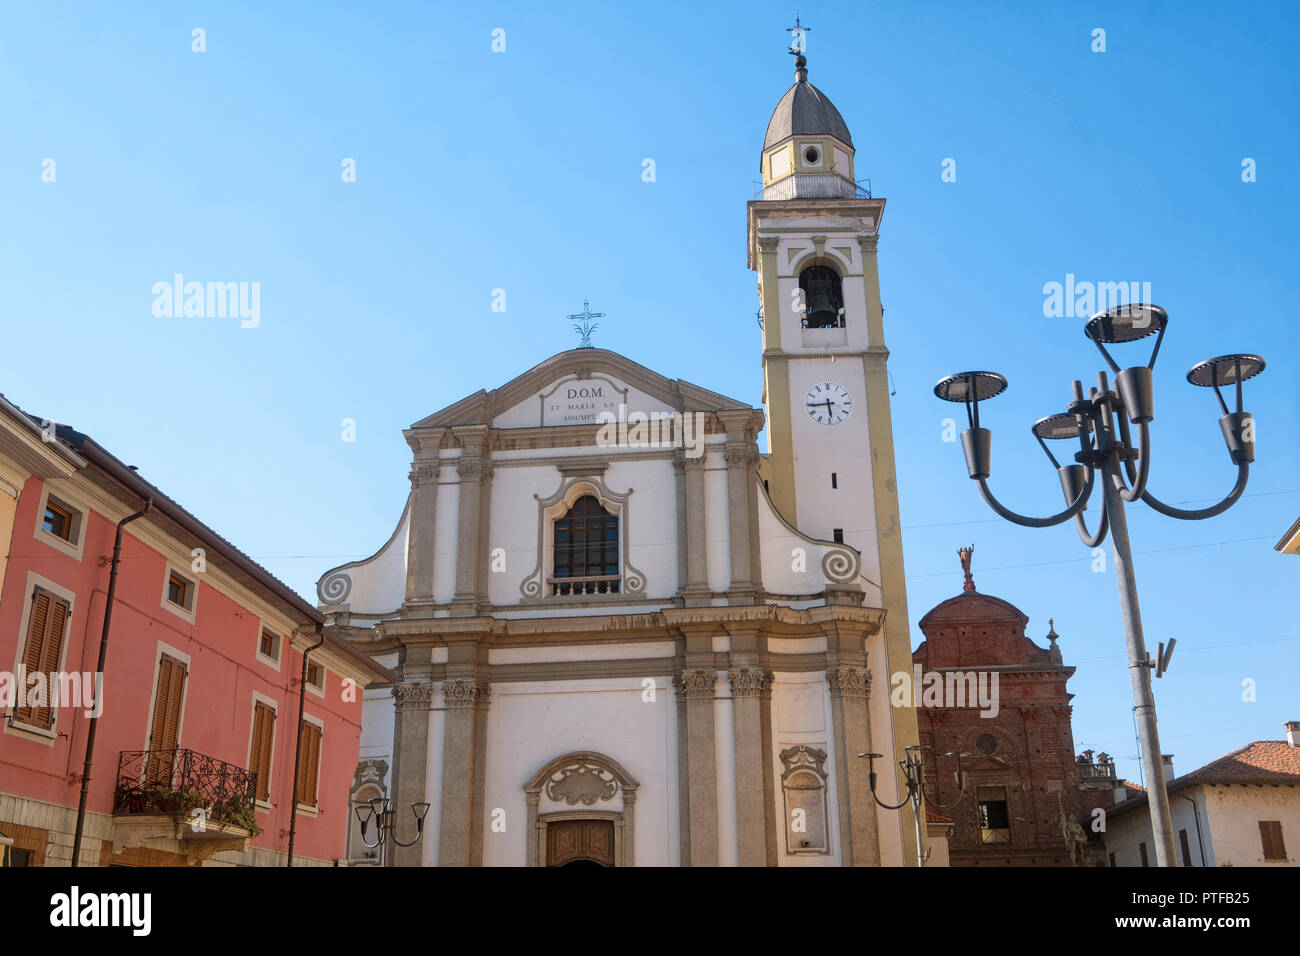 Carpignano Sesia, Novara, Piedmont, Italy: Santa Maria church and other historic buildings Stock Photo